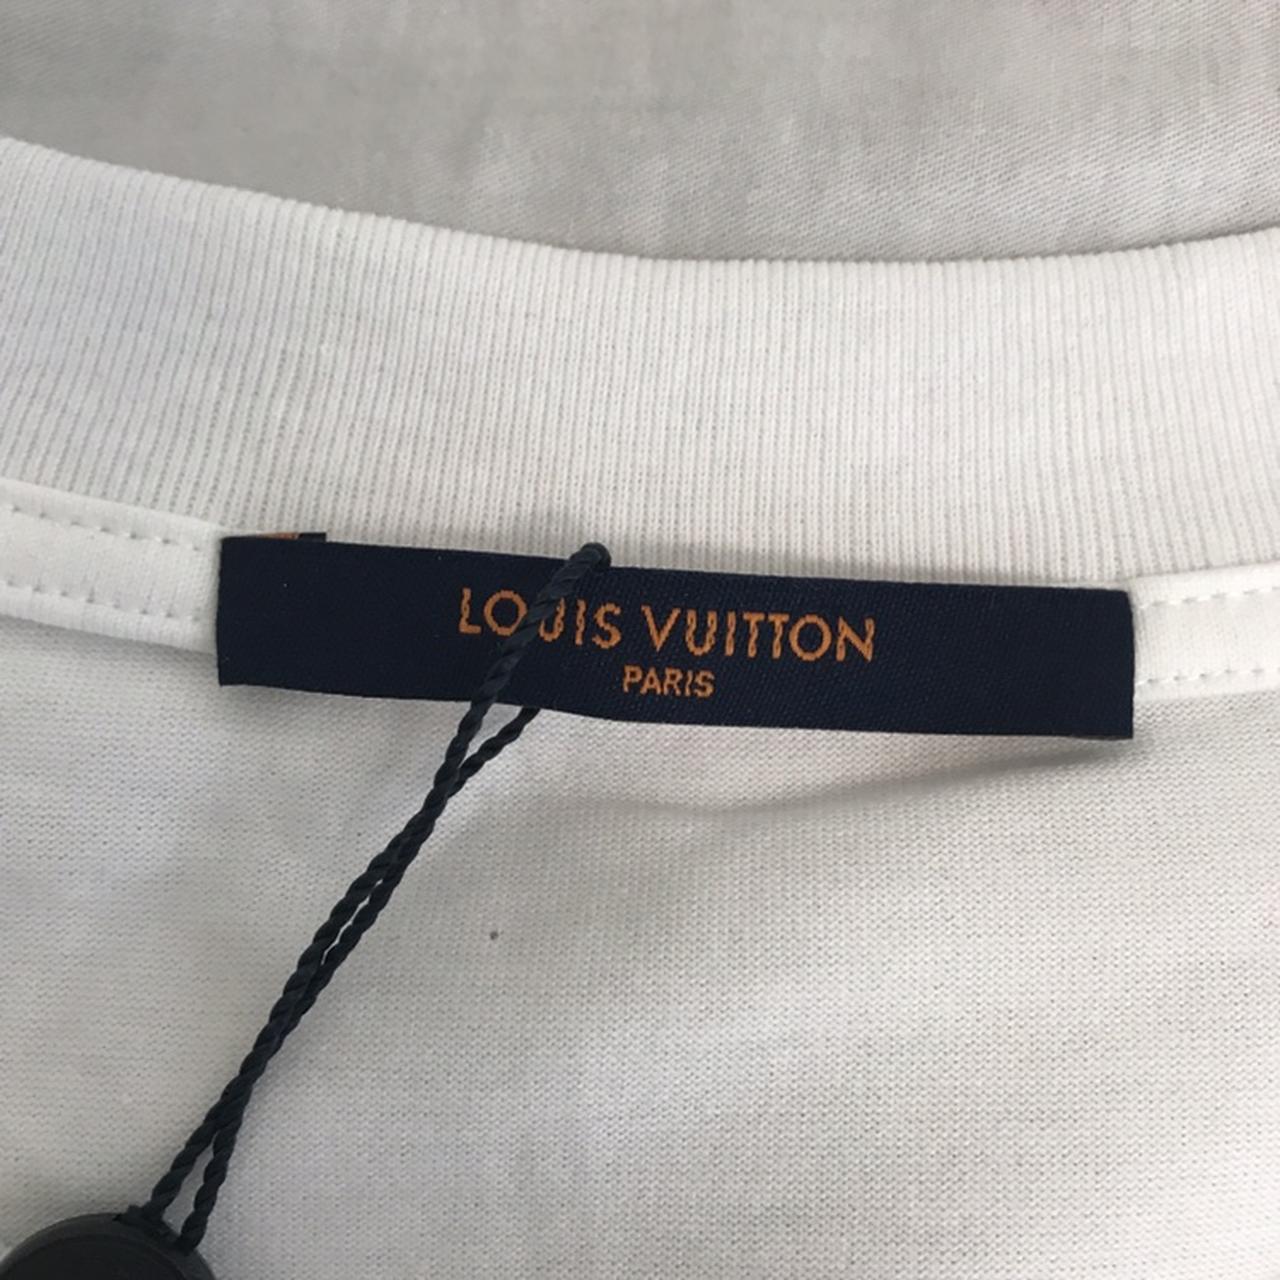 Louis Vuitton Tapestry Shirt 100% authentic Louis - Depop